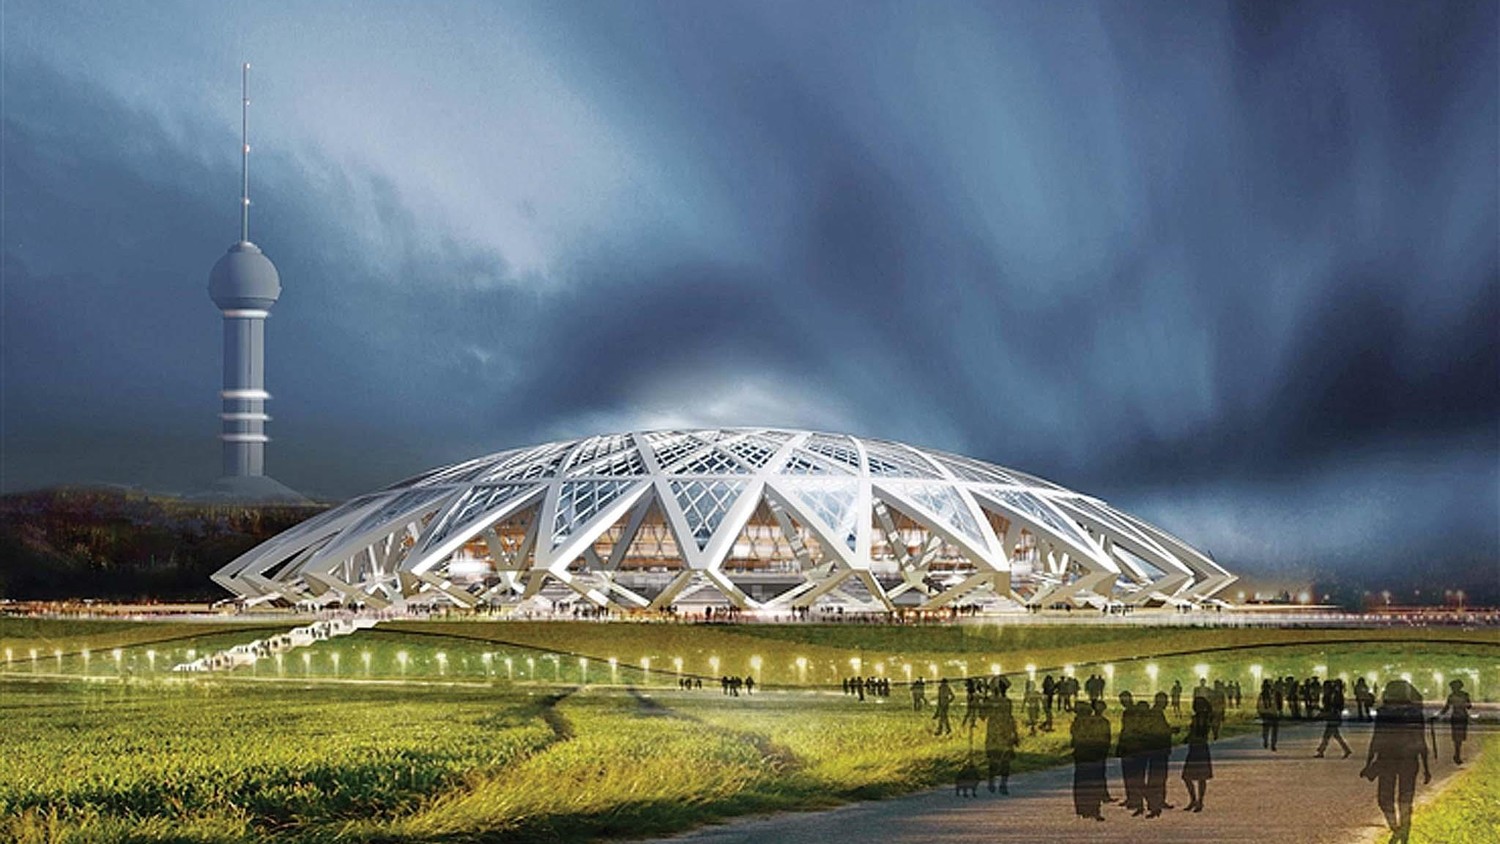 Первый камень в строительство стадиона в Самаре к Чемпионату Мира по футболу 2018 будет заложен в следующий понедельник, 21 июля